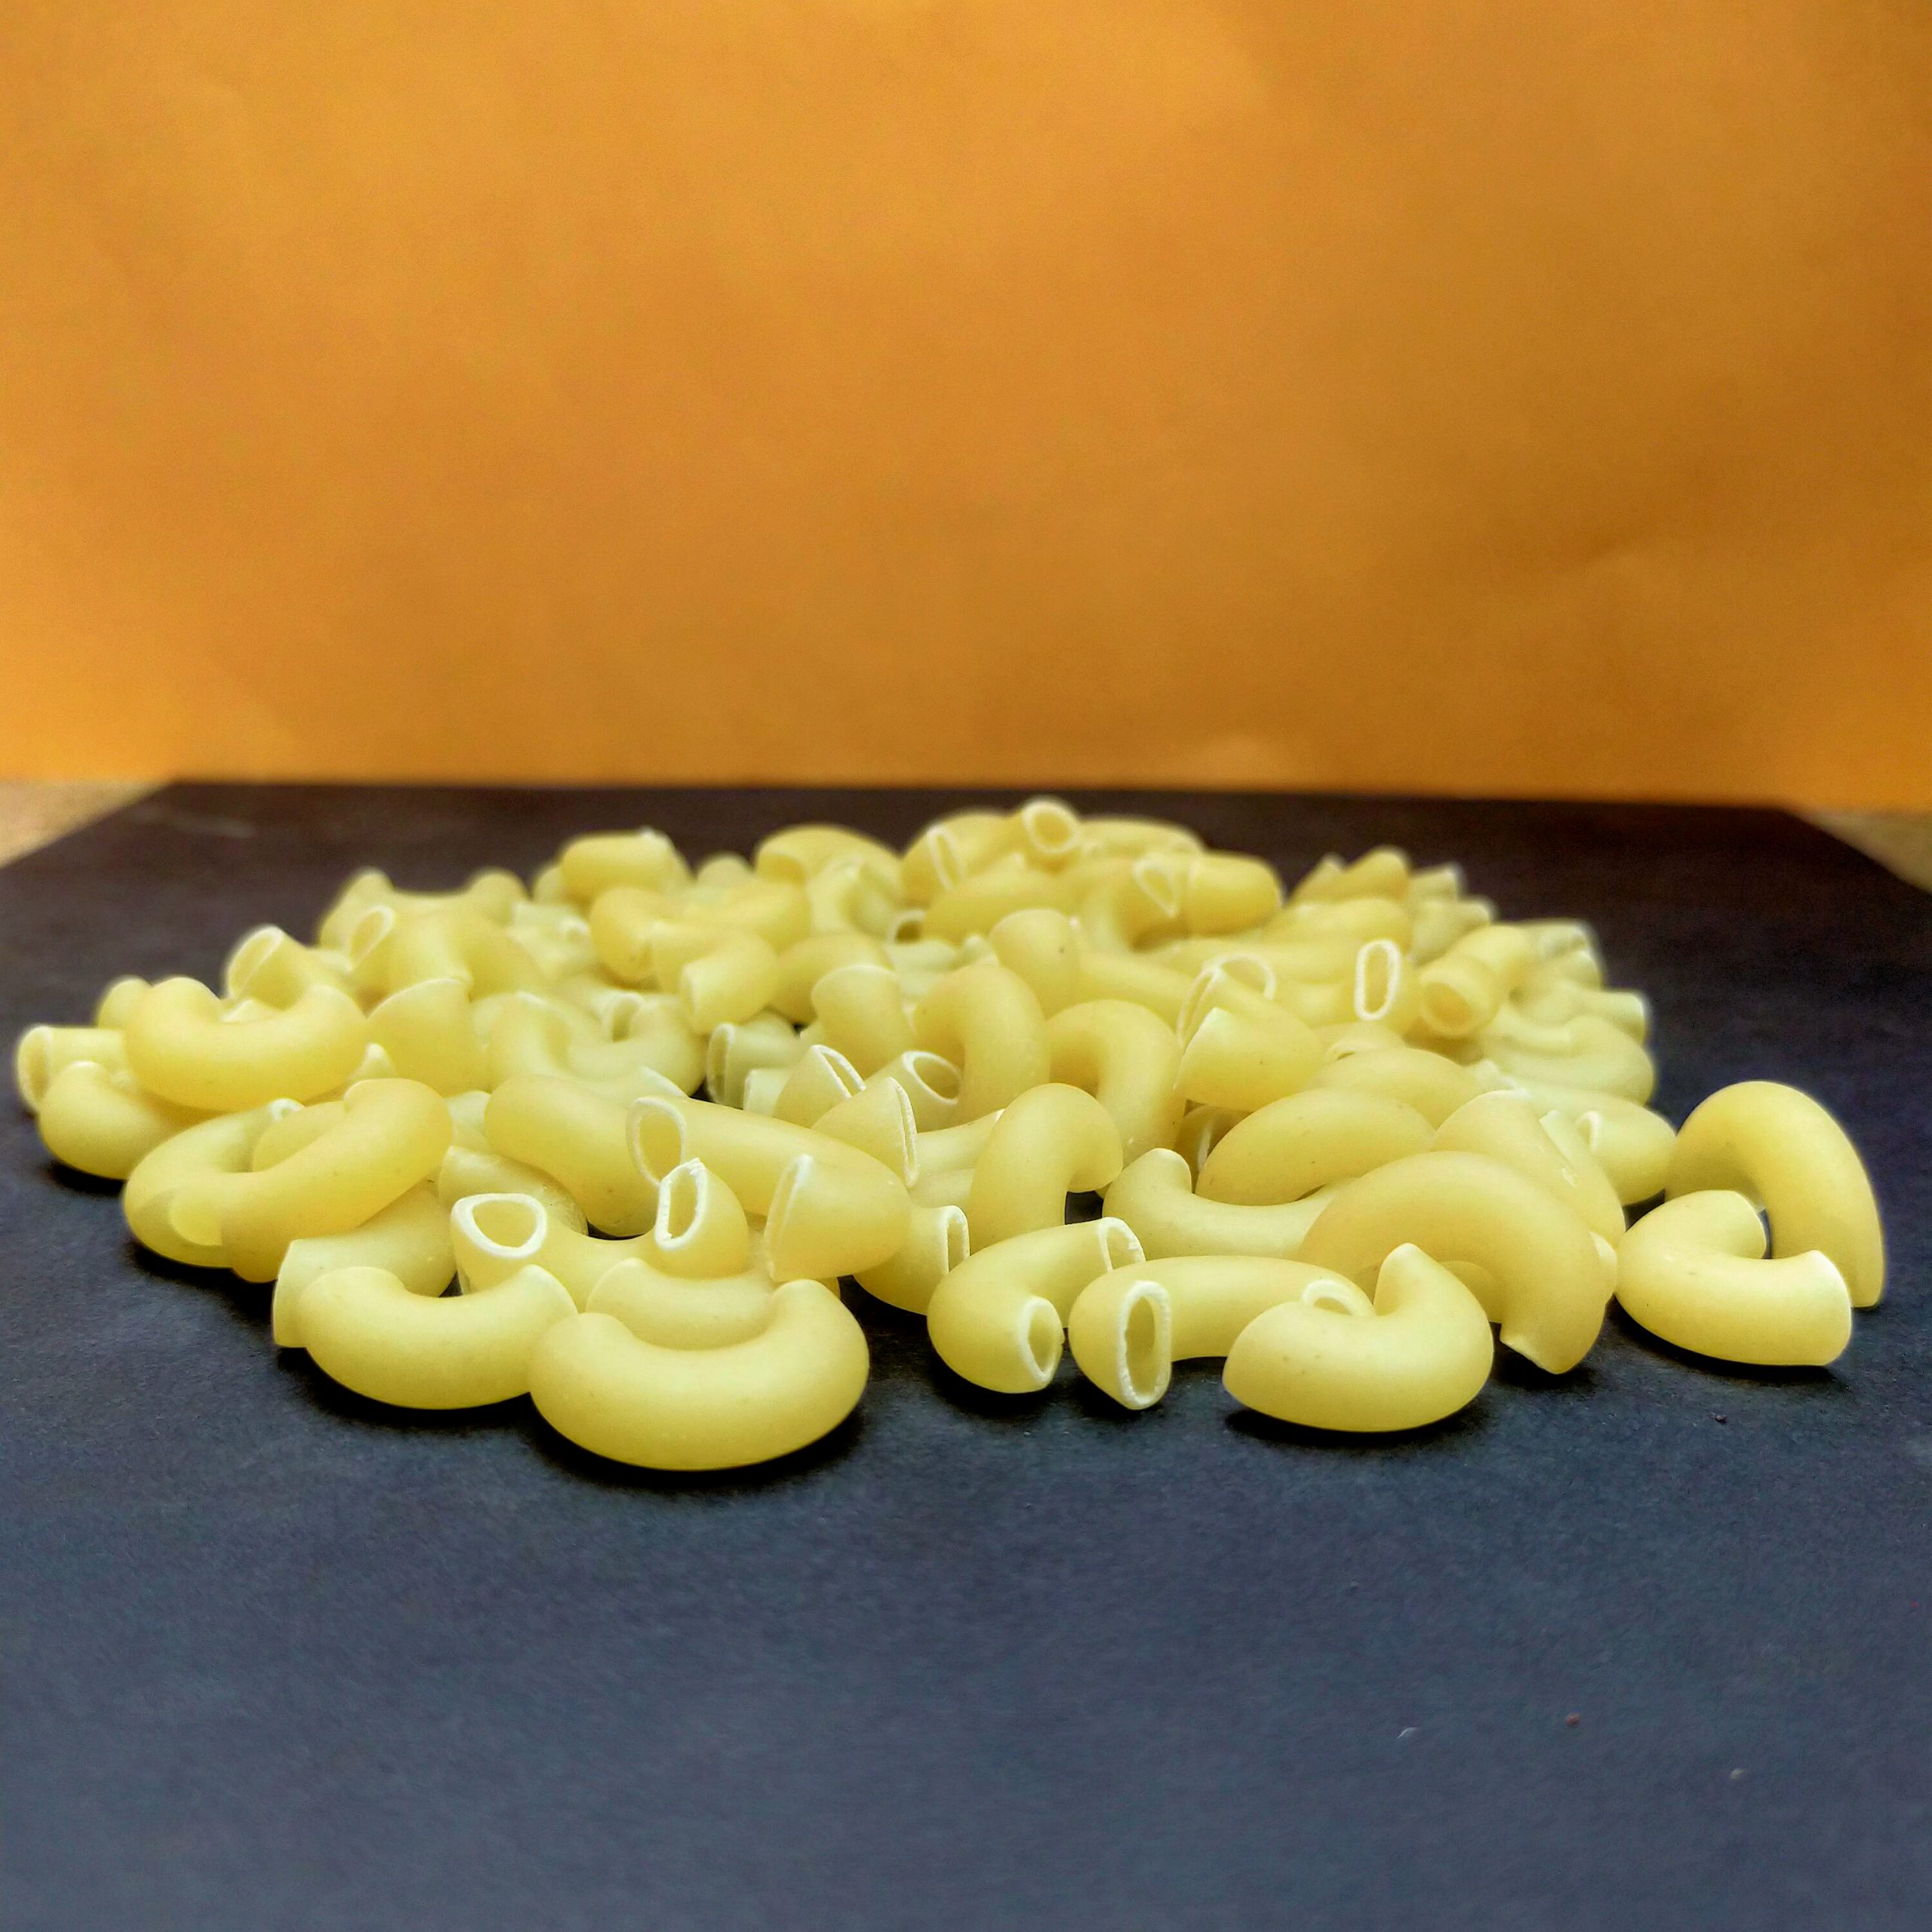 Macaroni pasta